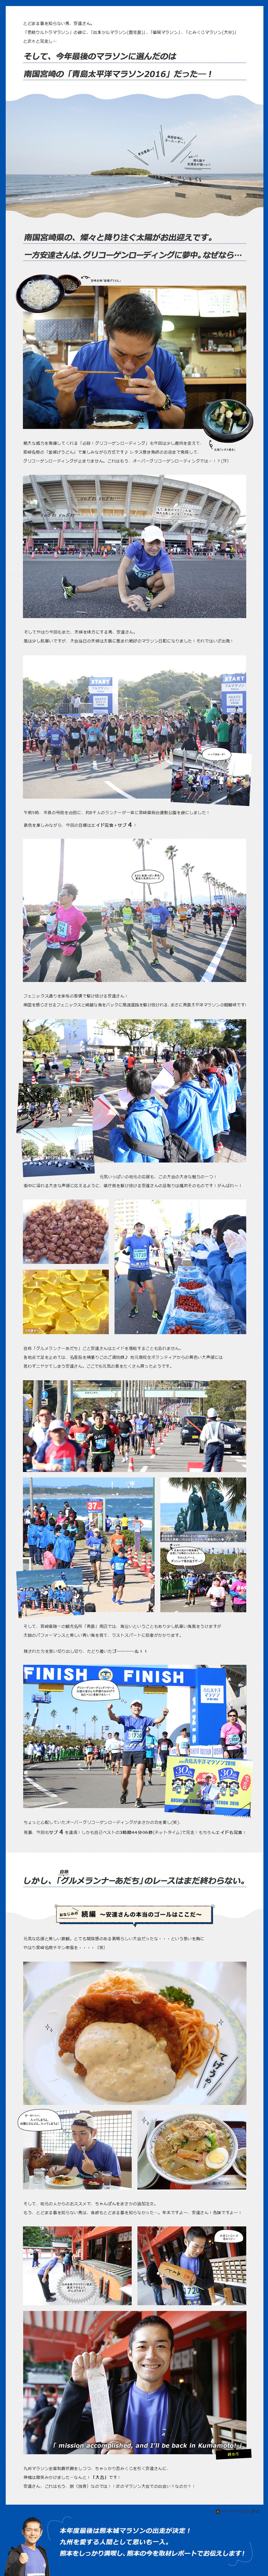  青島太平洋マラソン2016取材レポート特別企画　|　フルマラソンさらなる挑戦